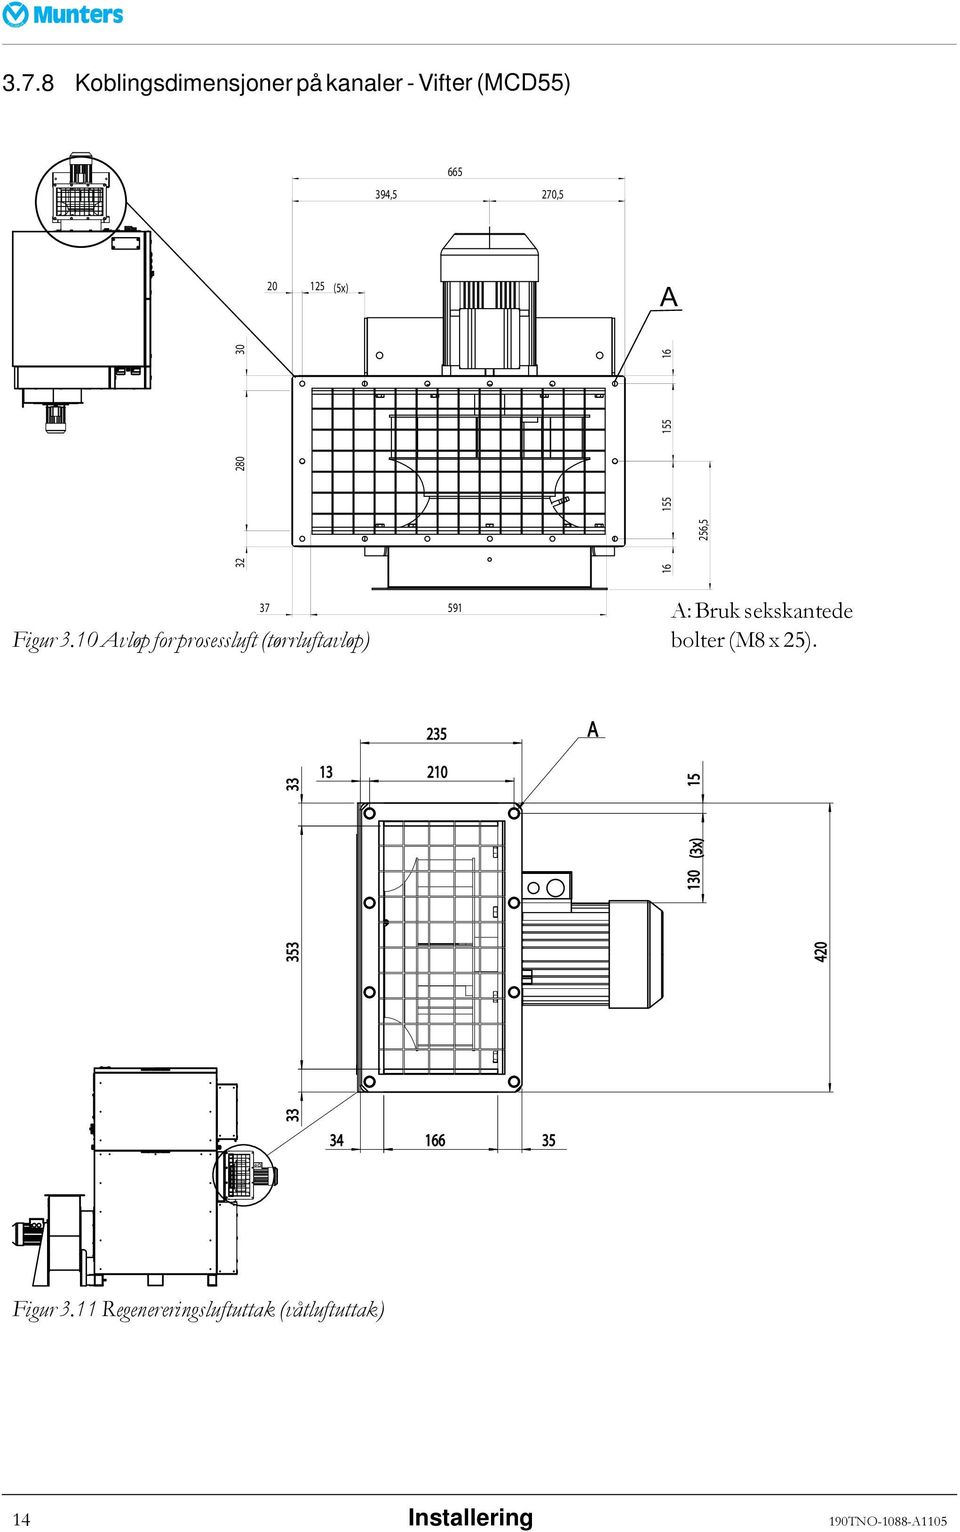 10 Avløp for prosessluft (tørrluftavløp) A: Bruk sekskantede bolter (M8 x 25).